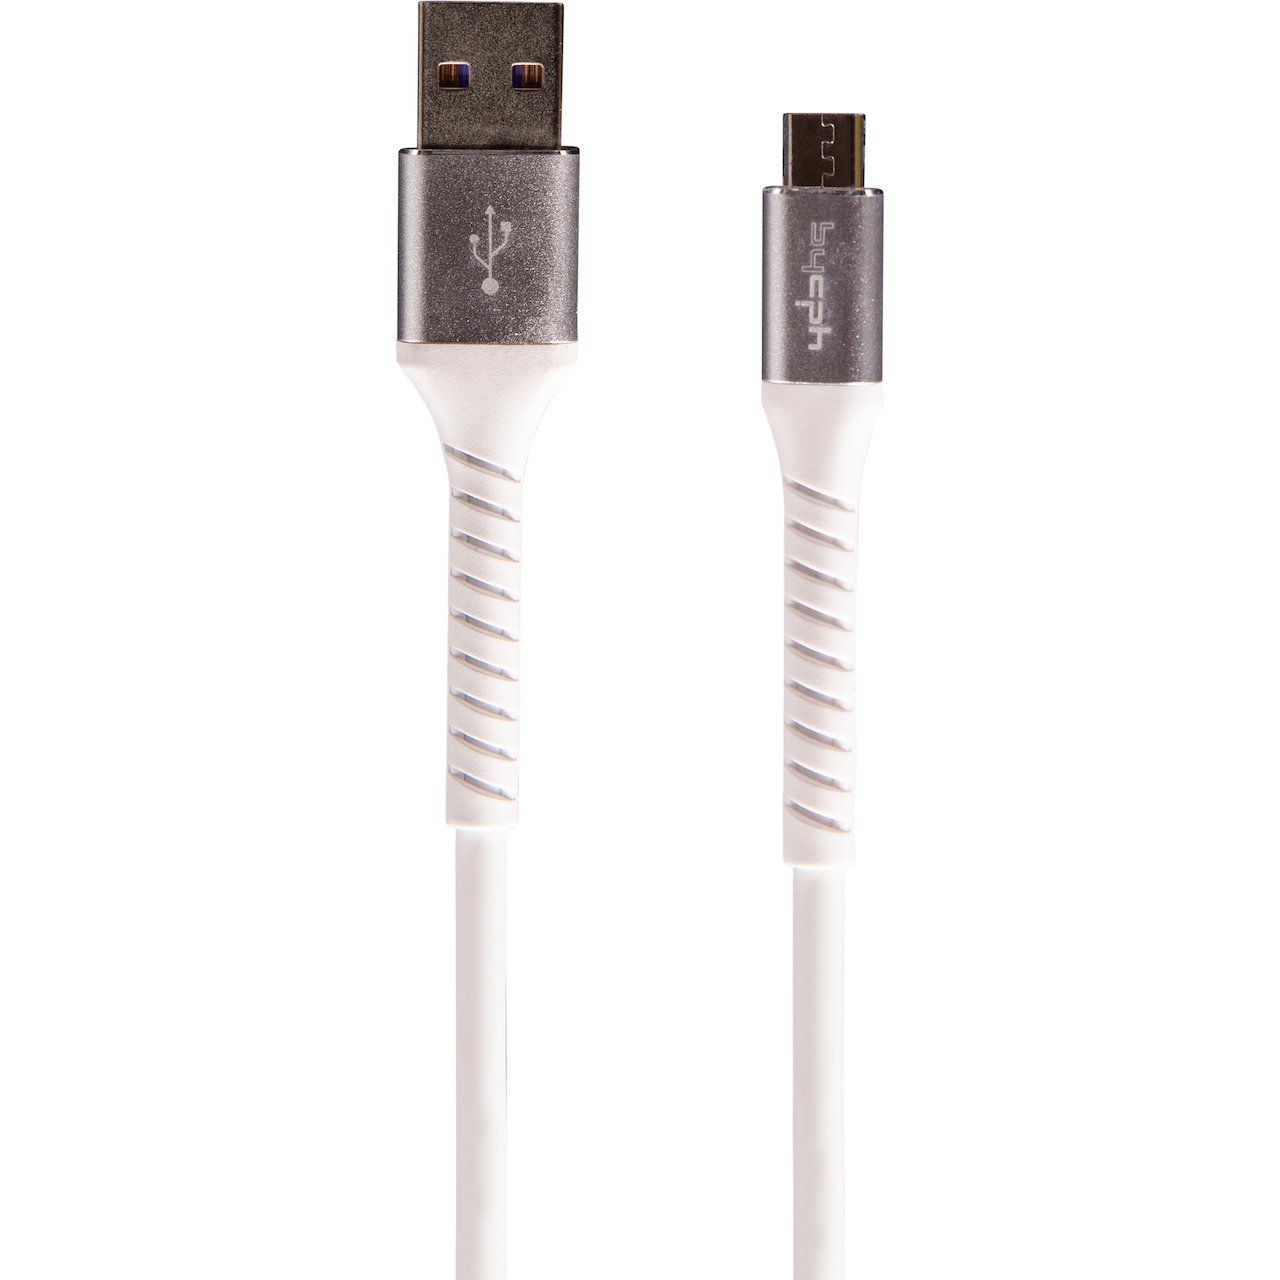 LEKI BYCPH PRO CABLE USB TIL MICRO-USB 2 M